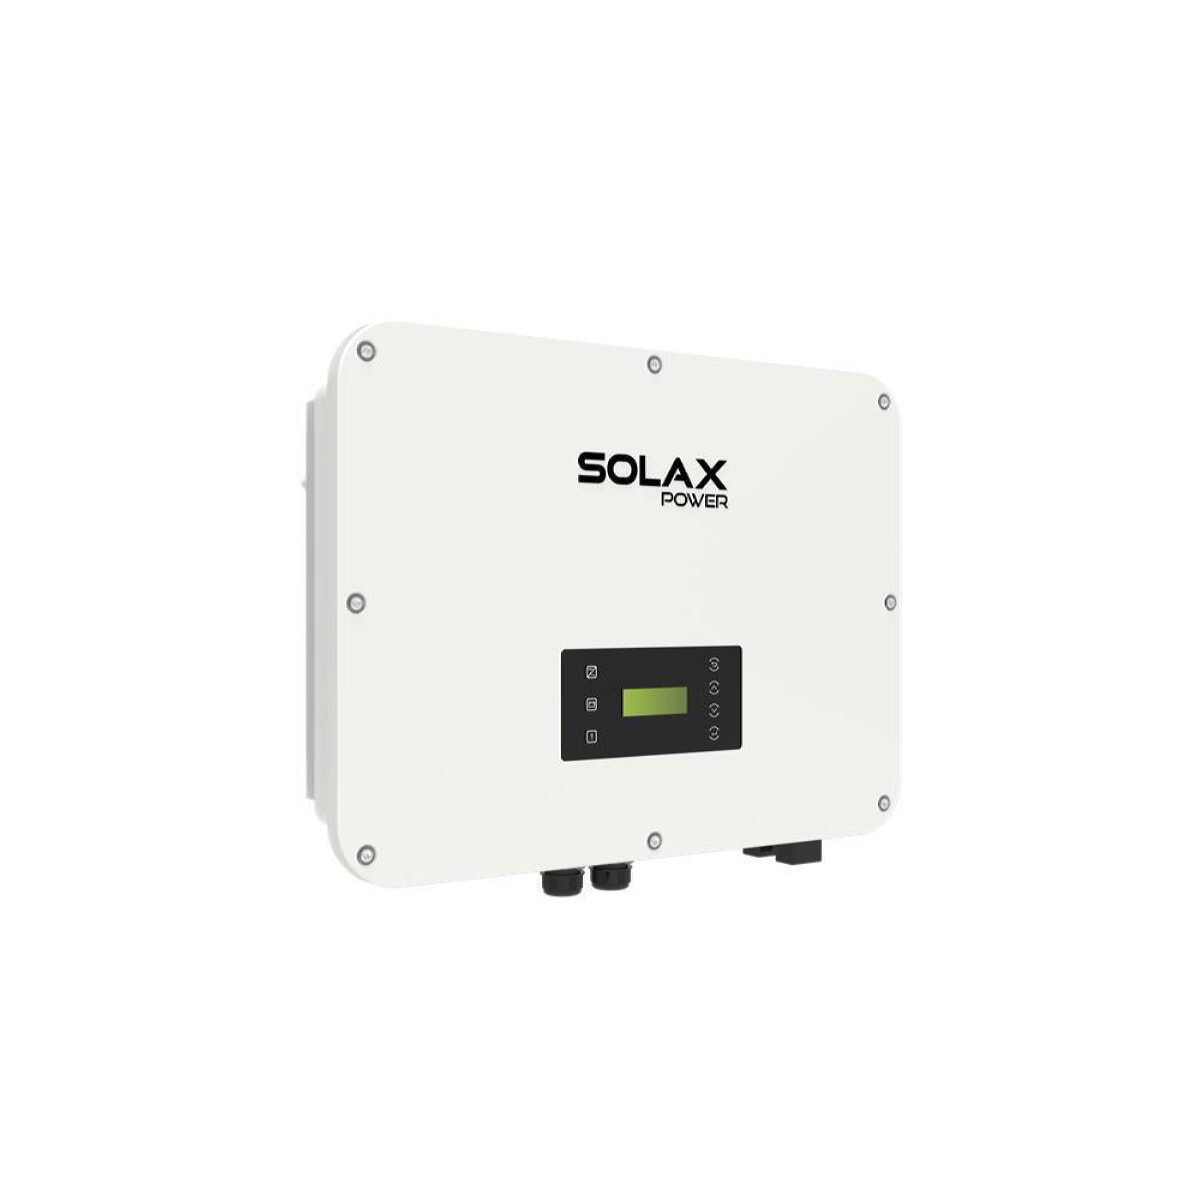 SolaX X3 Ultra 25K three-phase hybrid inverter